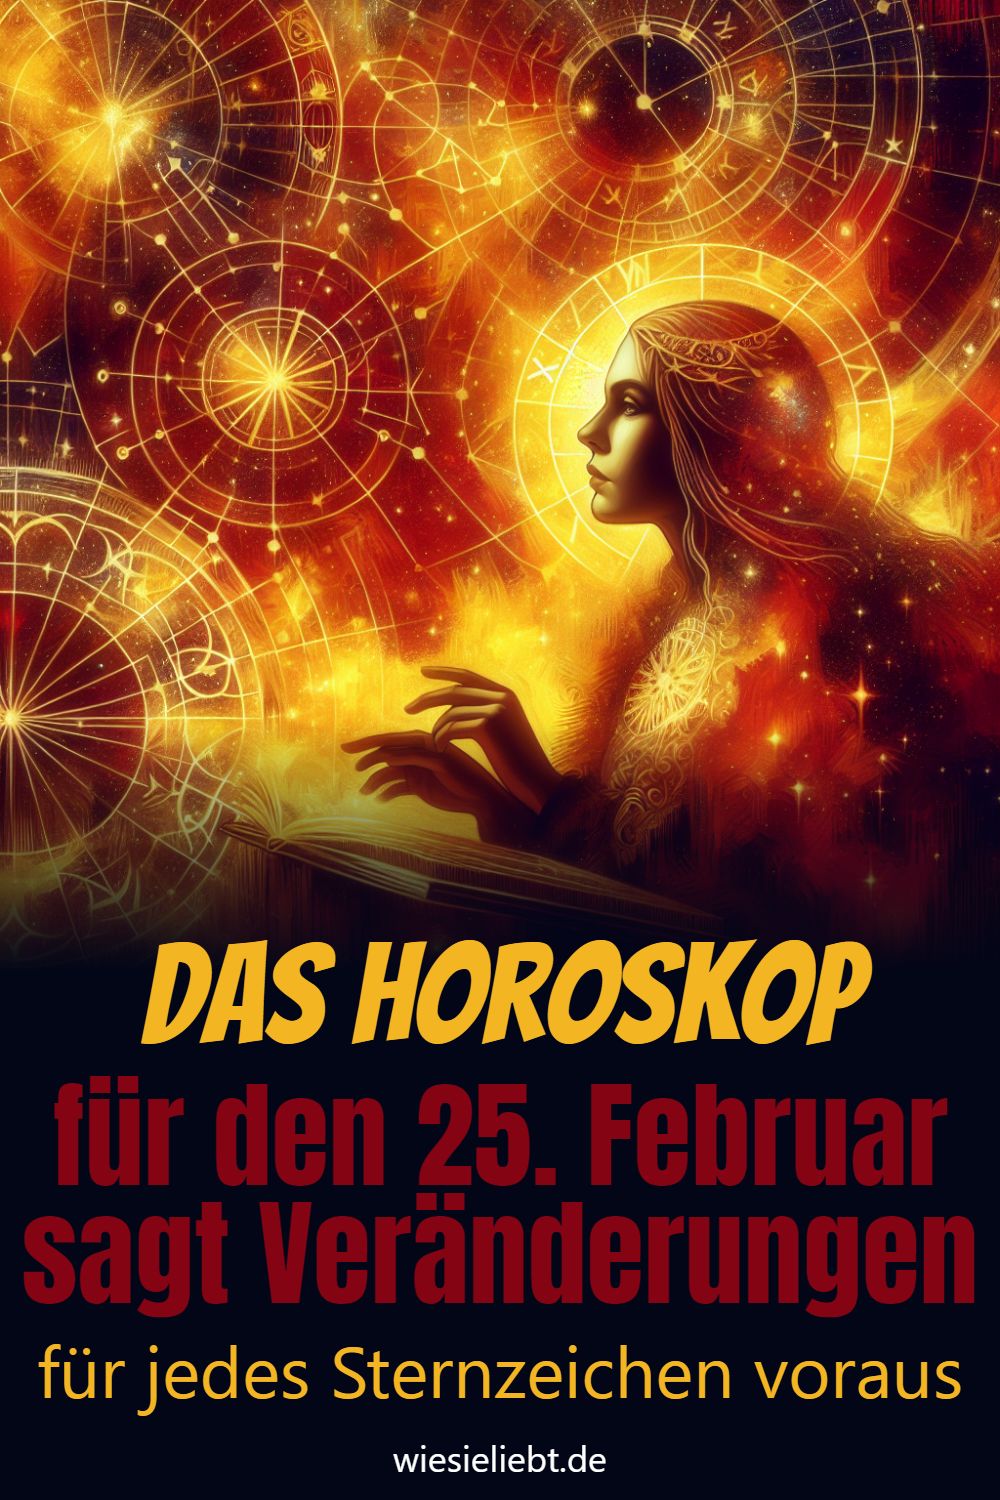 Das Horoskop für den 25. Februar sagt Veränderungen für jedes Sternzeichen voraus